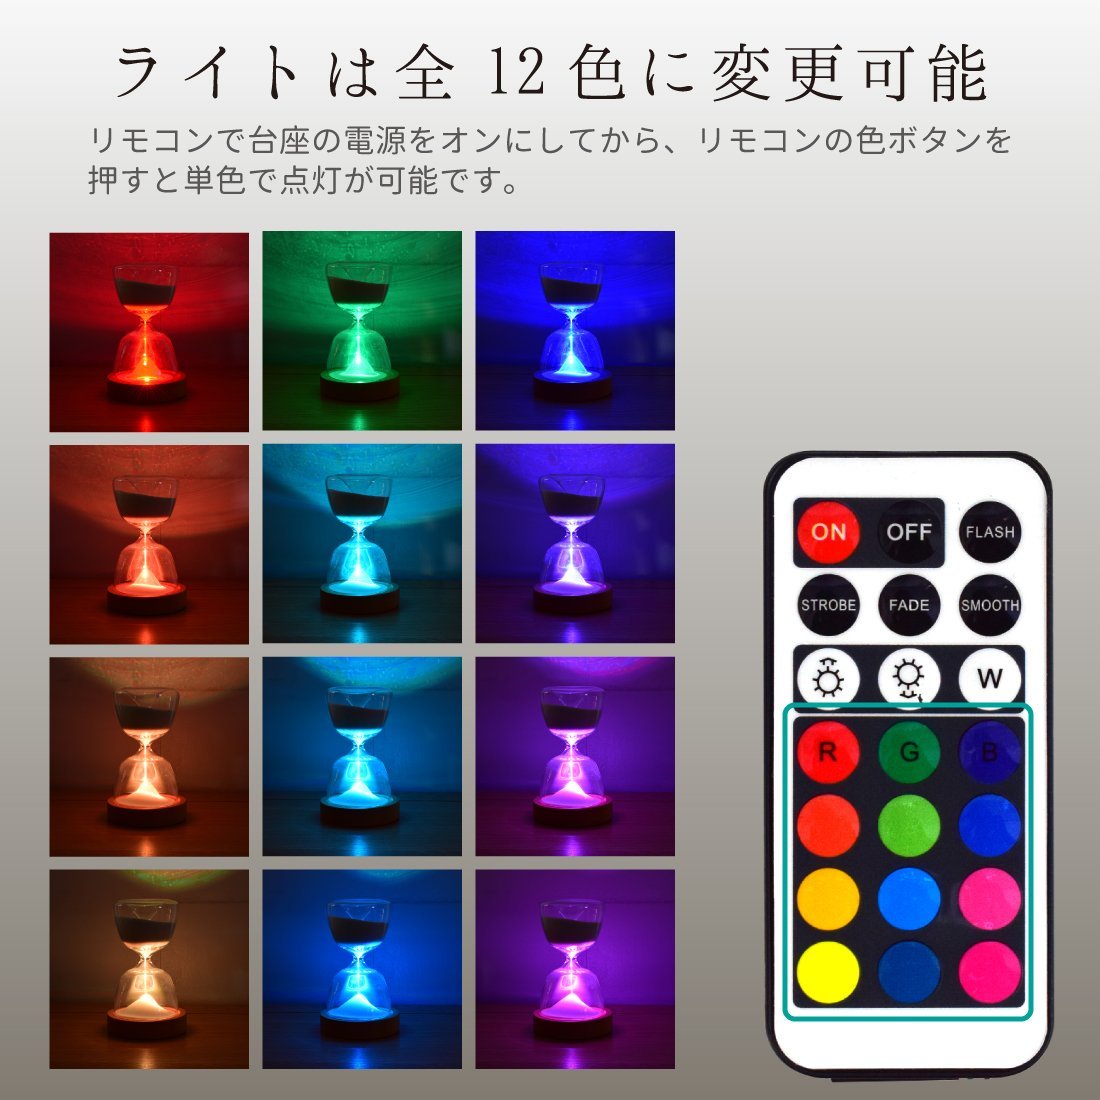 砂時計ライト LED 15分計 砂時計 インテリア 間接照明 USB充電式 12色切替 明るさ調節可能 リモコン付き_画像4